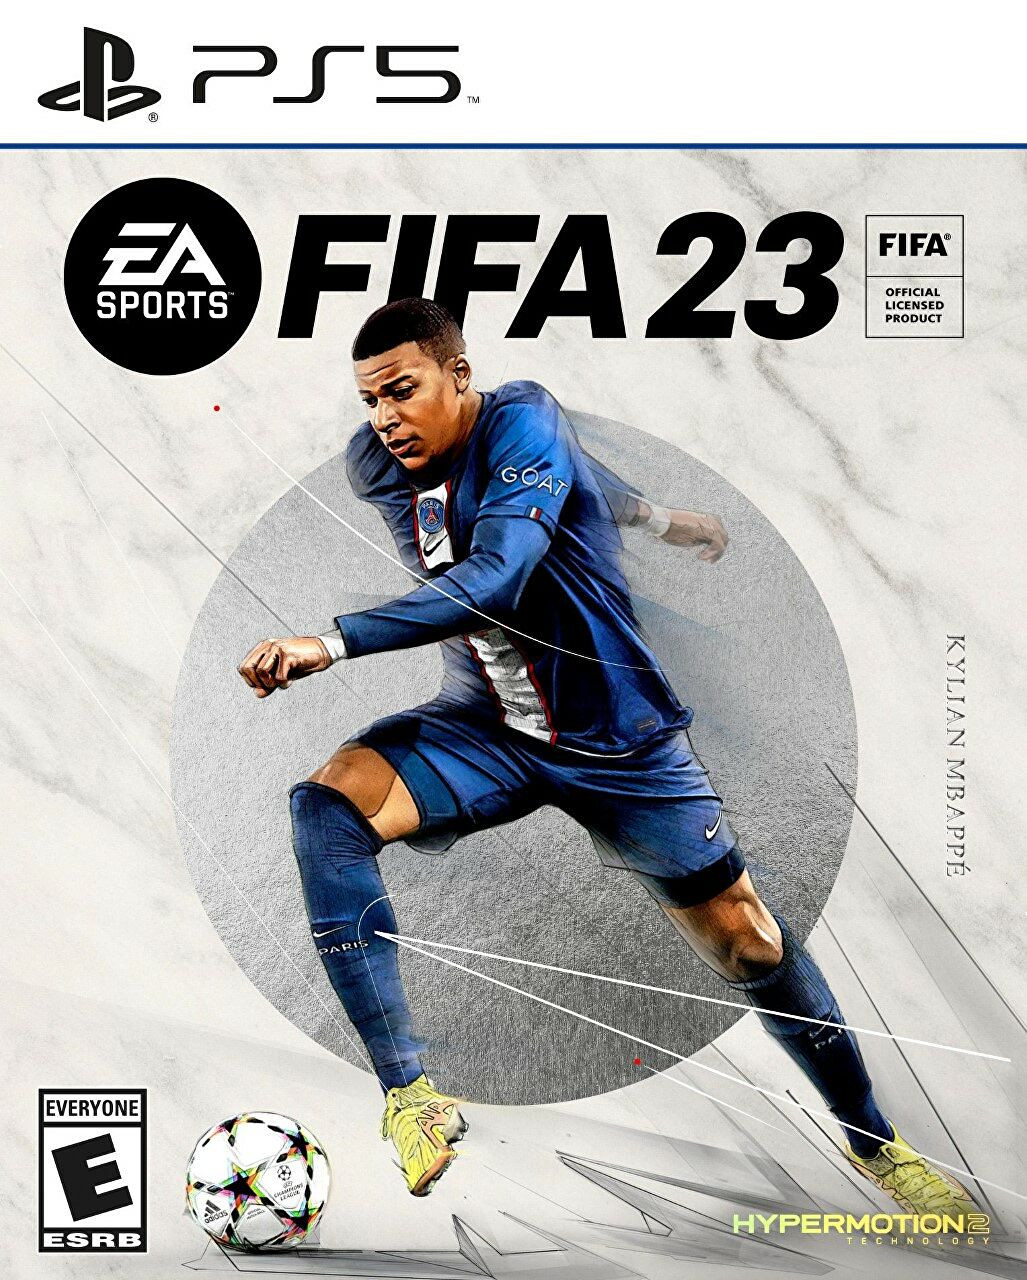 Килиан Мбаппе на обложке FIFA 23 Ultimate Edition